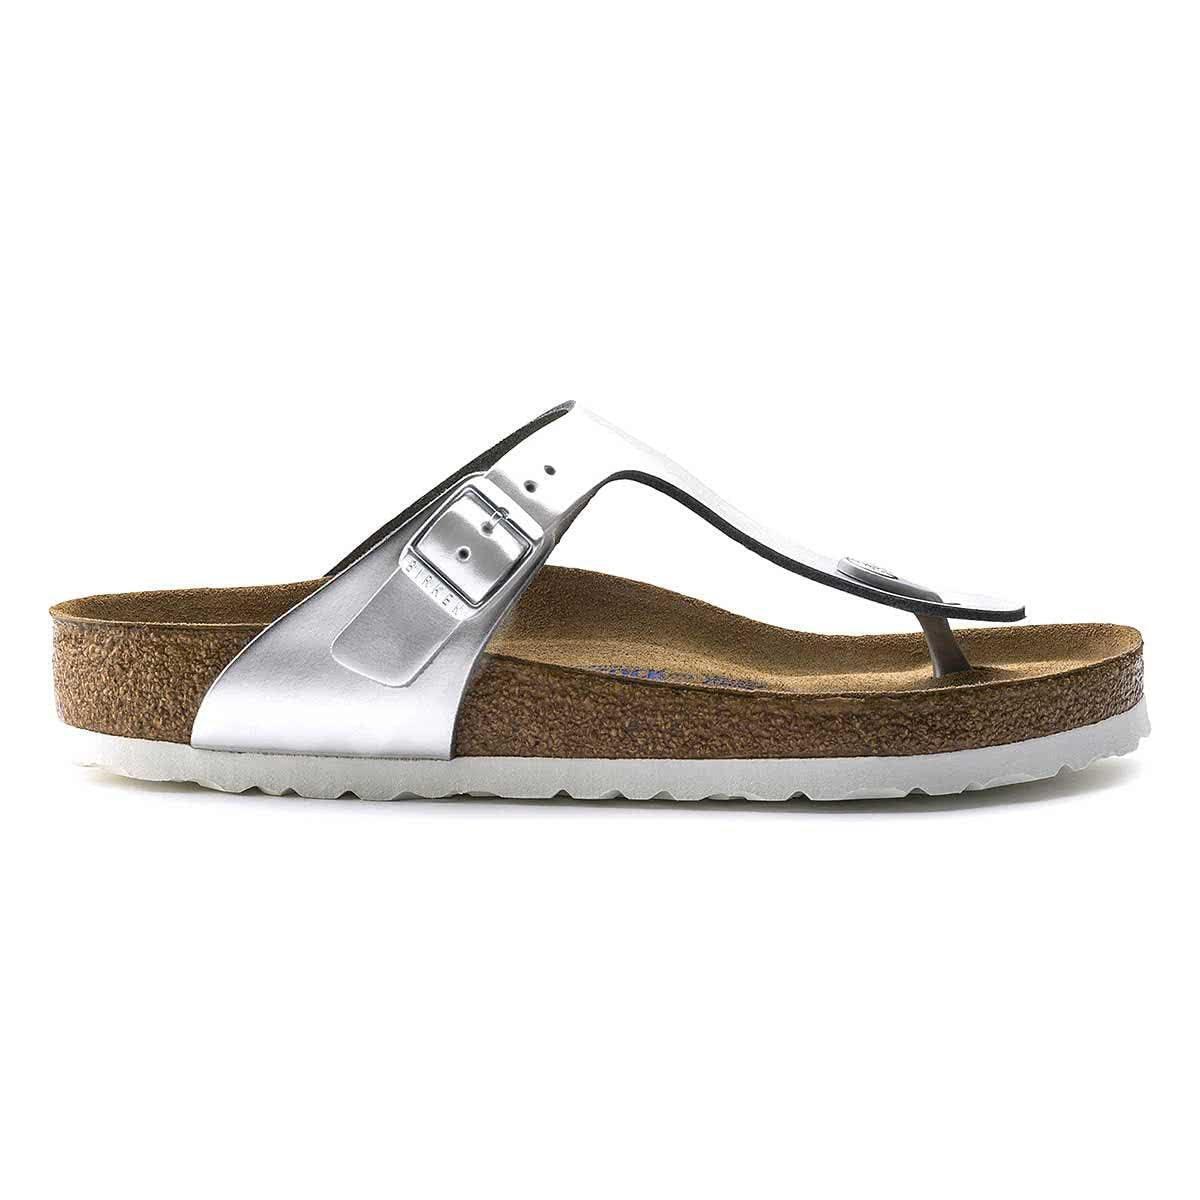 Birkenstock Gizeh Soft Footbed Natural Leather Sandals - Regular - Metallic Silver